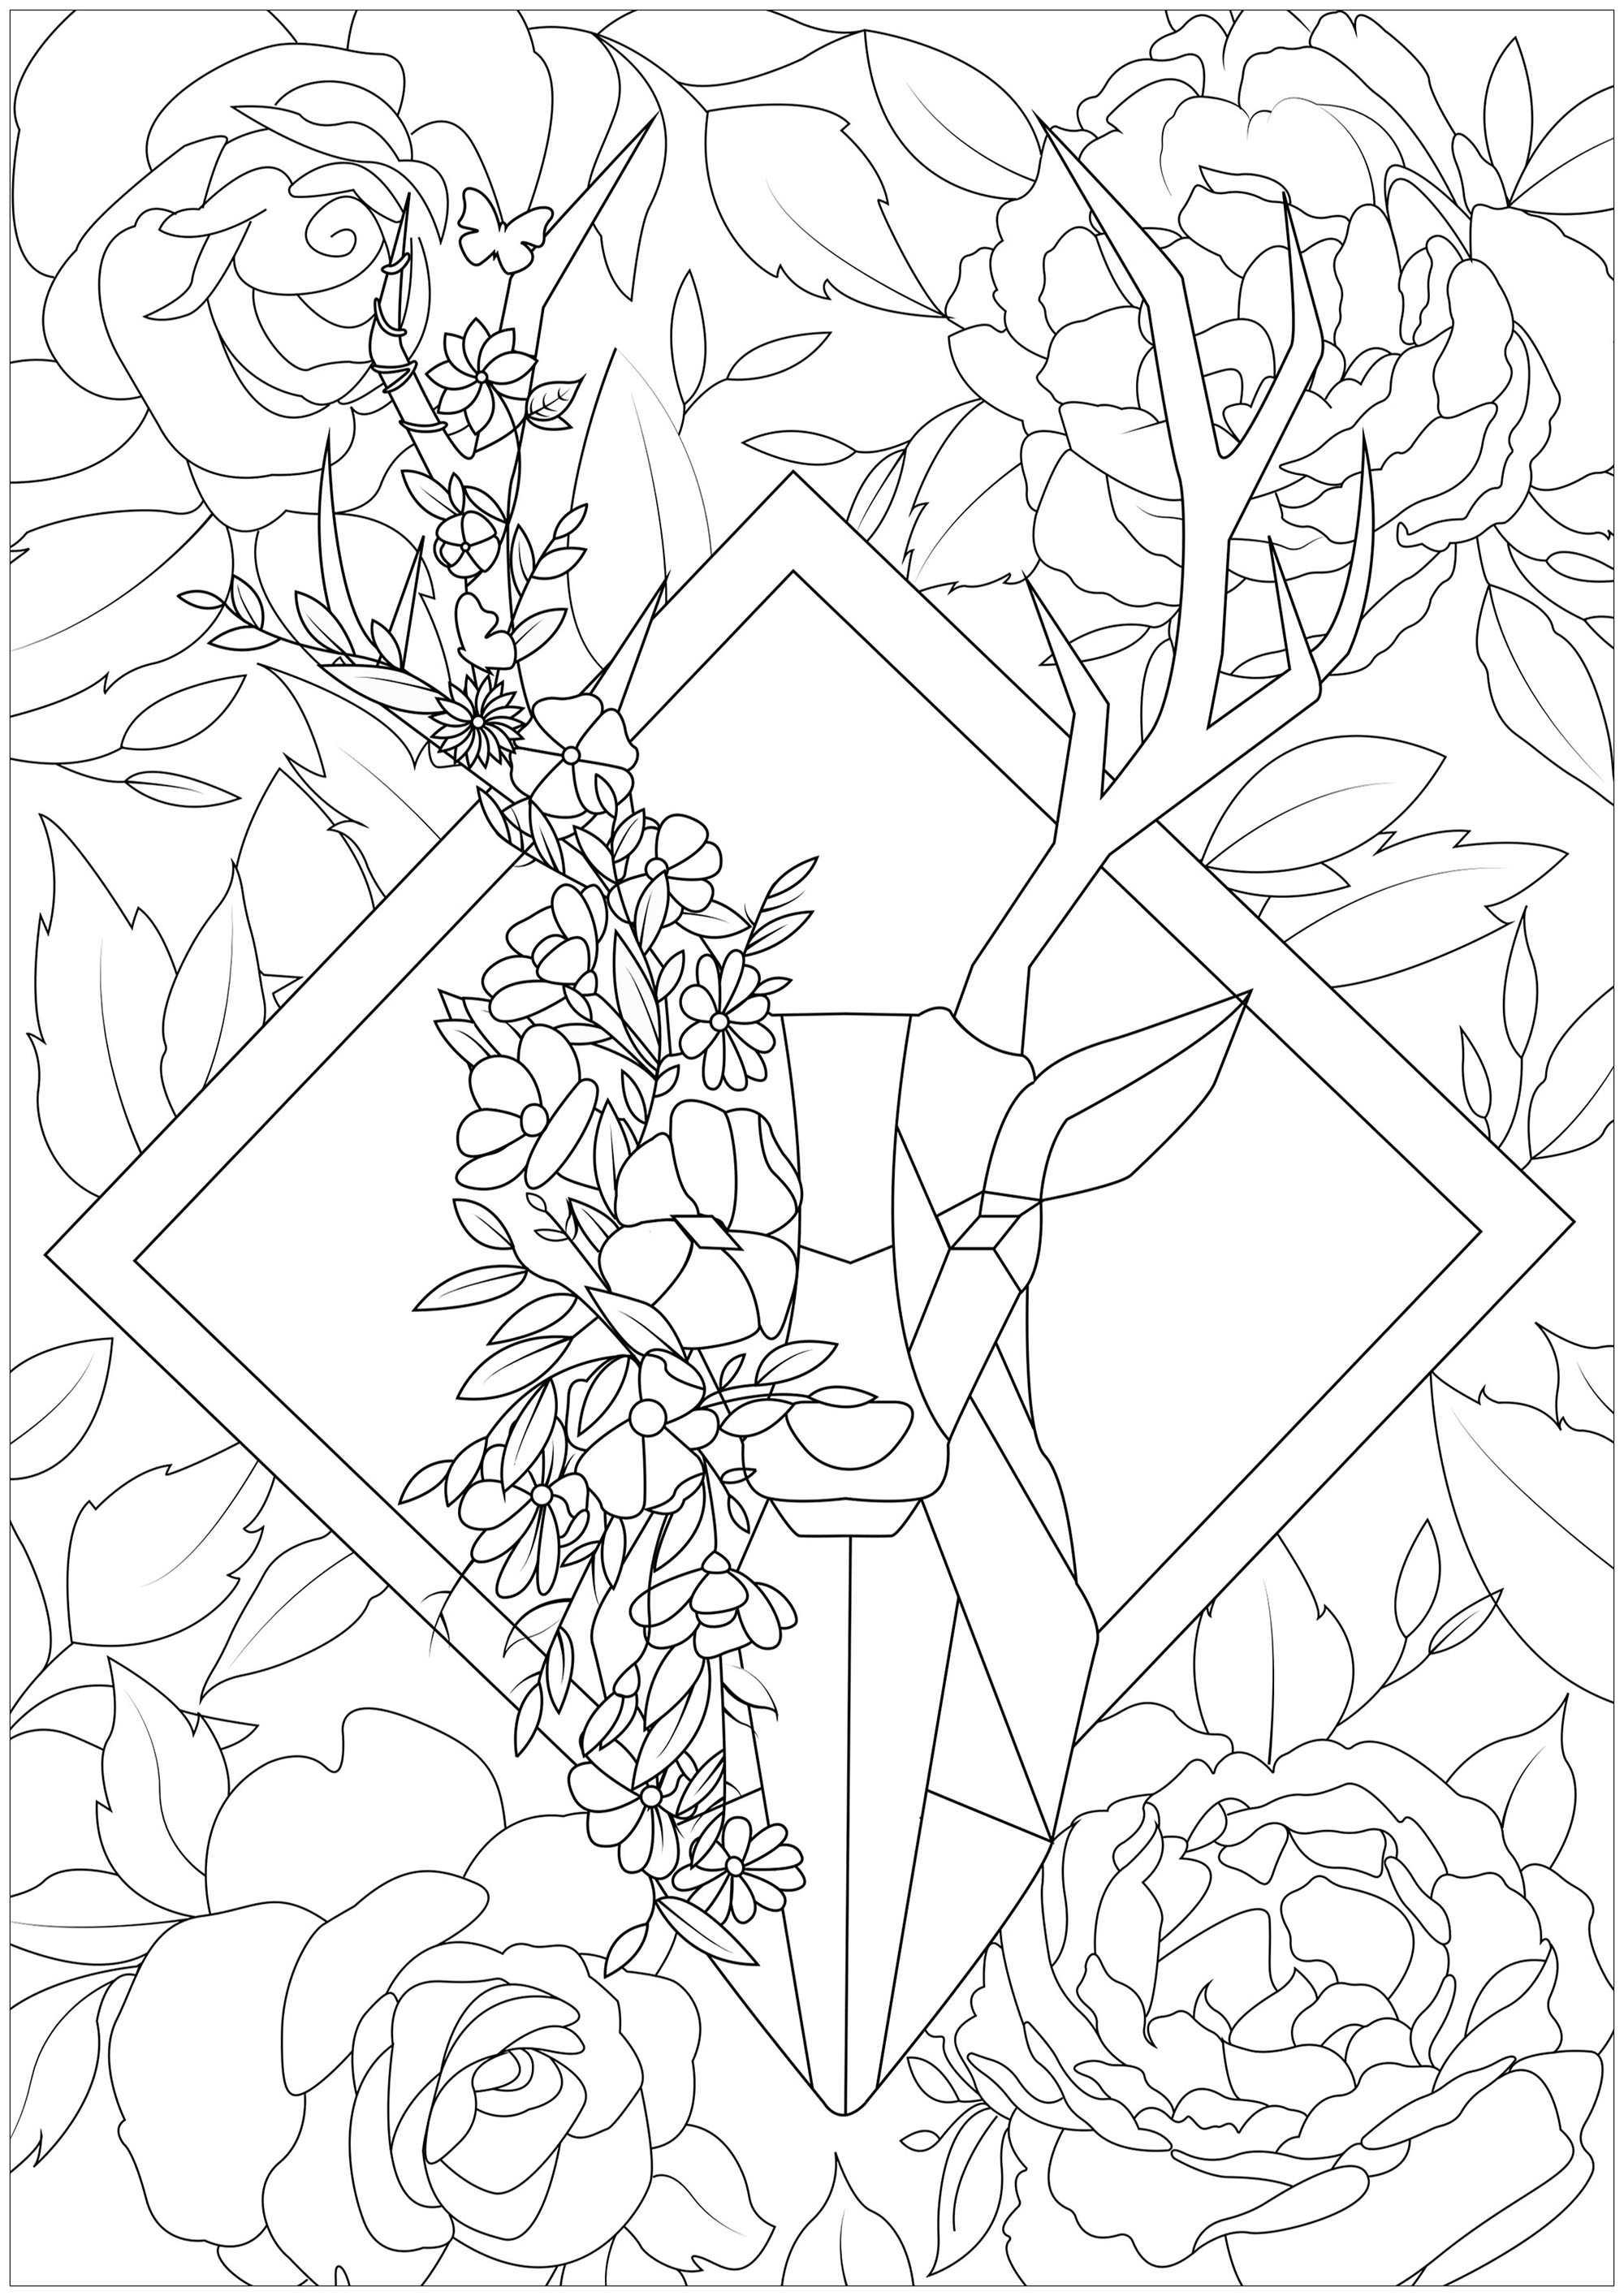 Dieser geometrische Hirsch scheint inmitten eines Waldes voller Blumen zu stehen, Künstler : Arwen